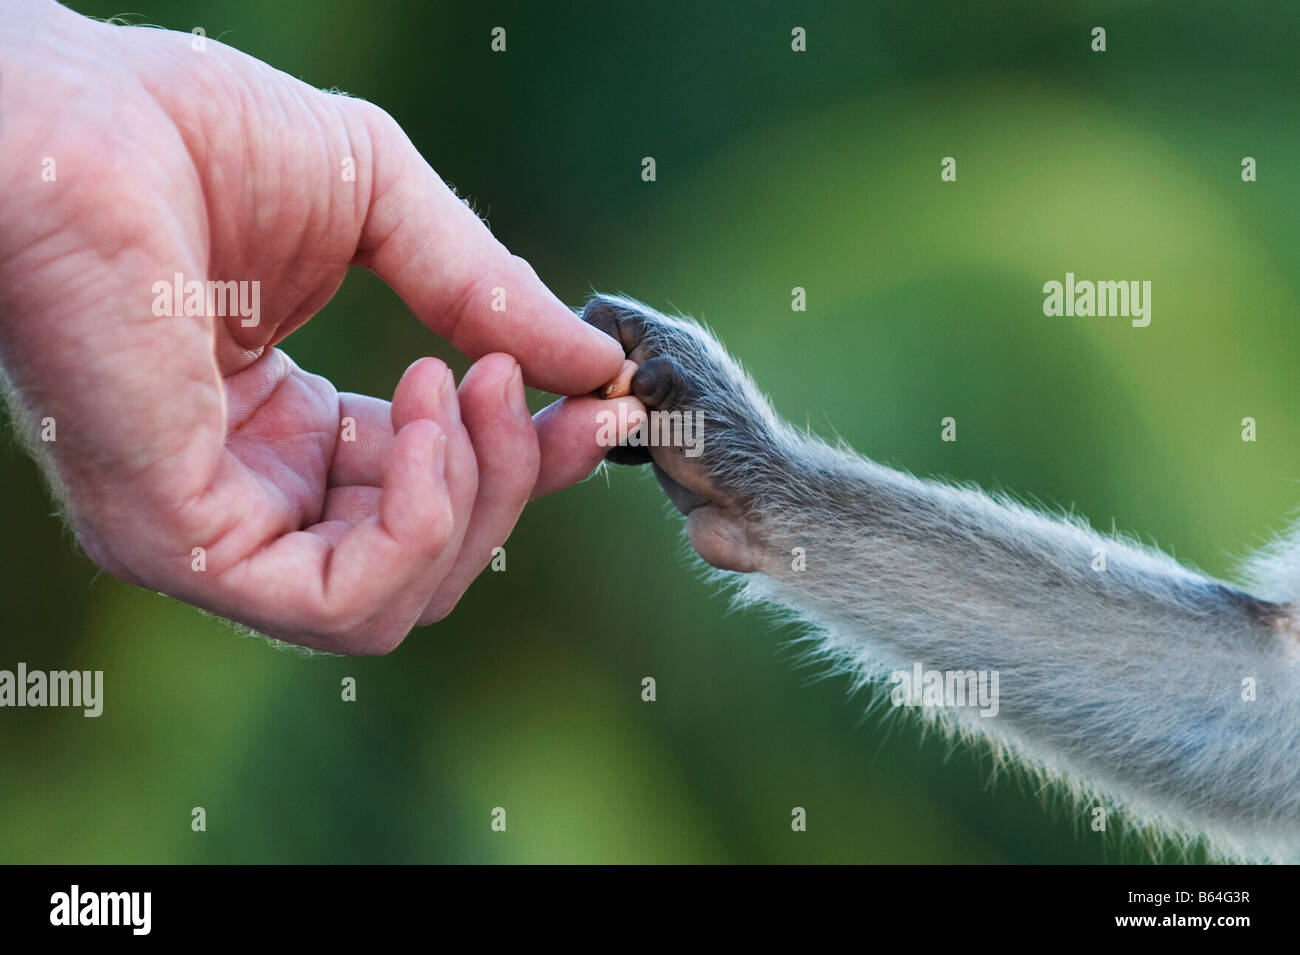 Bonnet Macaque Affen Hand nehmend Erdnüsse aus einer menschlichen Hand. Andhra Pradesh, Indien Stockfoto